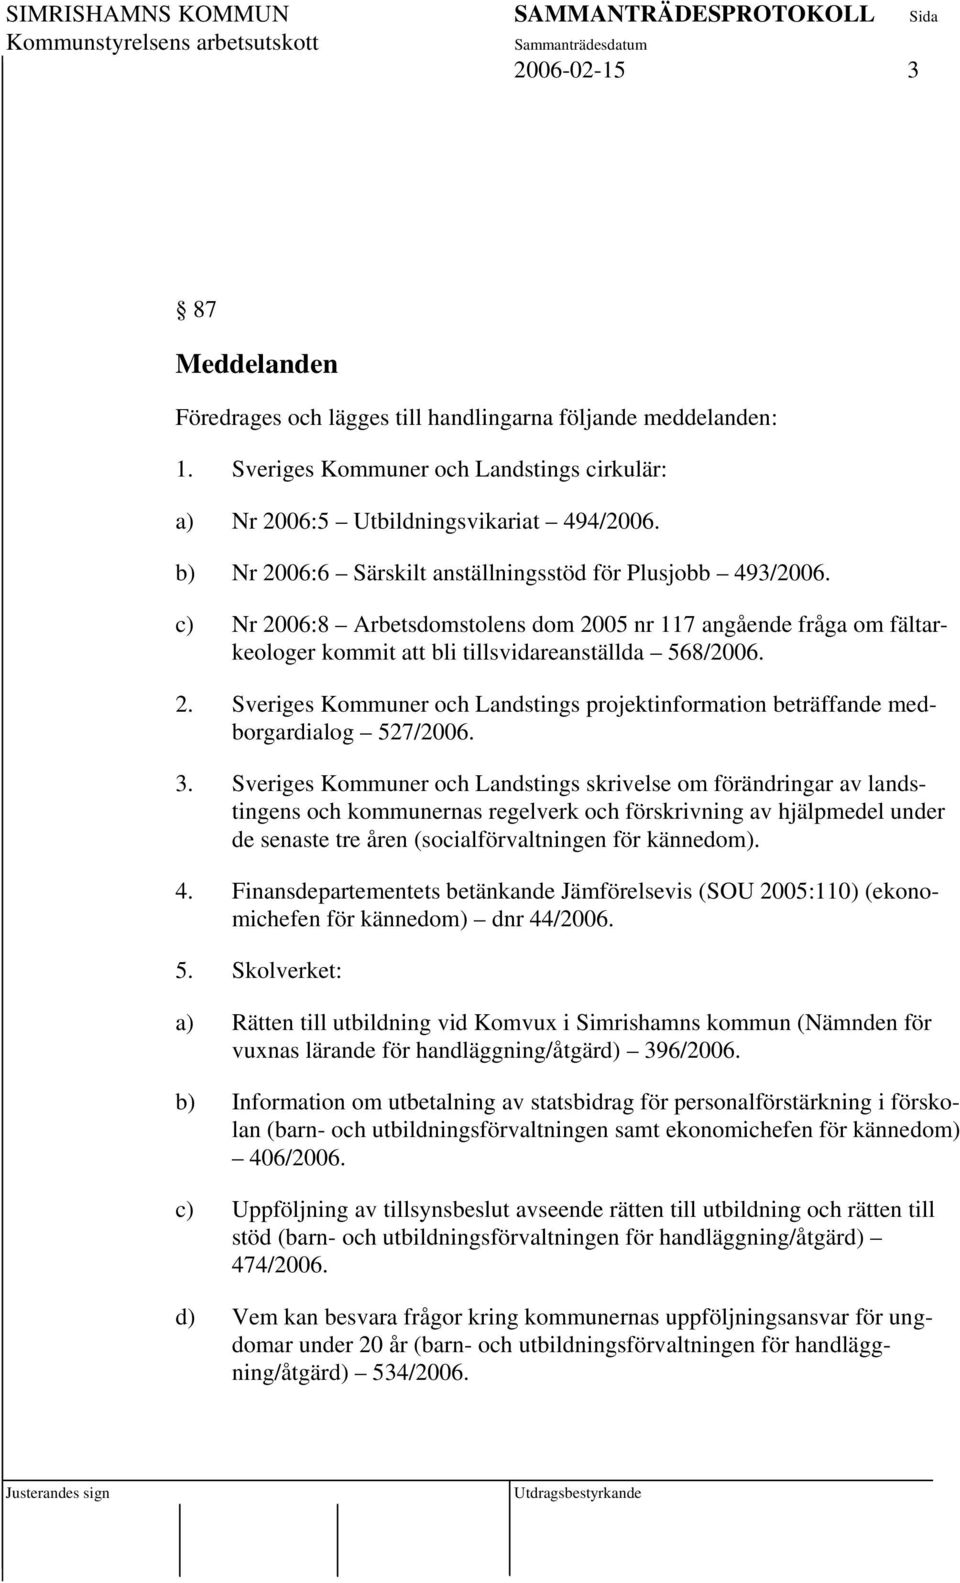 3. Sveriges Kommuner och Landstings skrivelse om förändringar av landstingens och kommunernas regelverk och förskrivning av hjälpmedel under de senaste tre åren (socialförvaltningen för kännedom). 4.